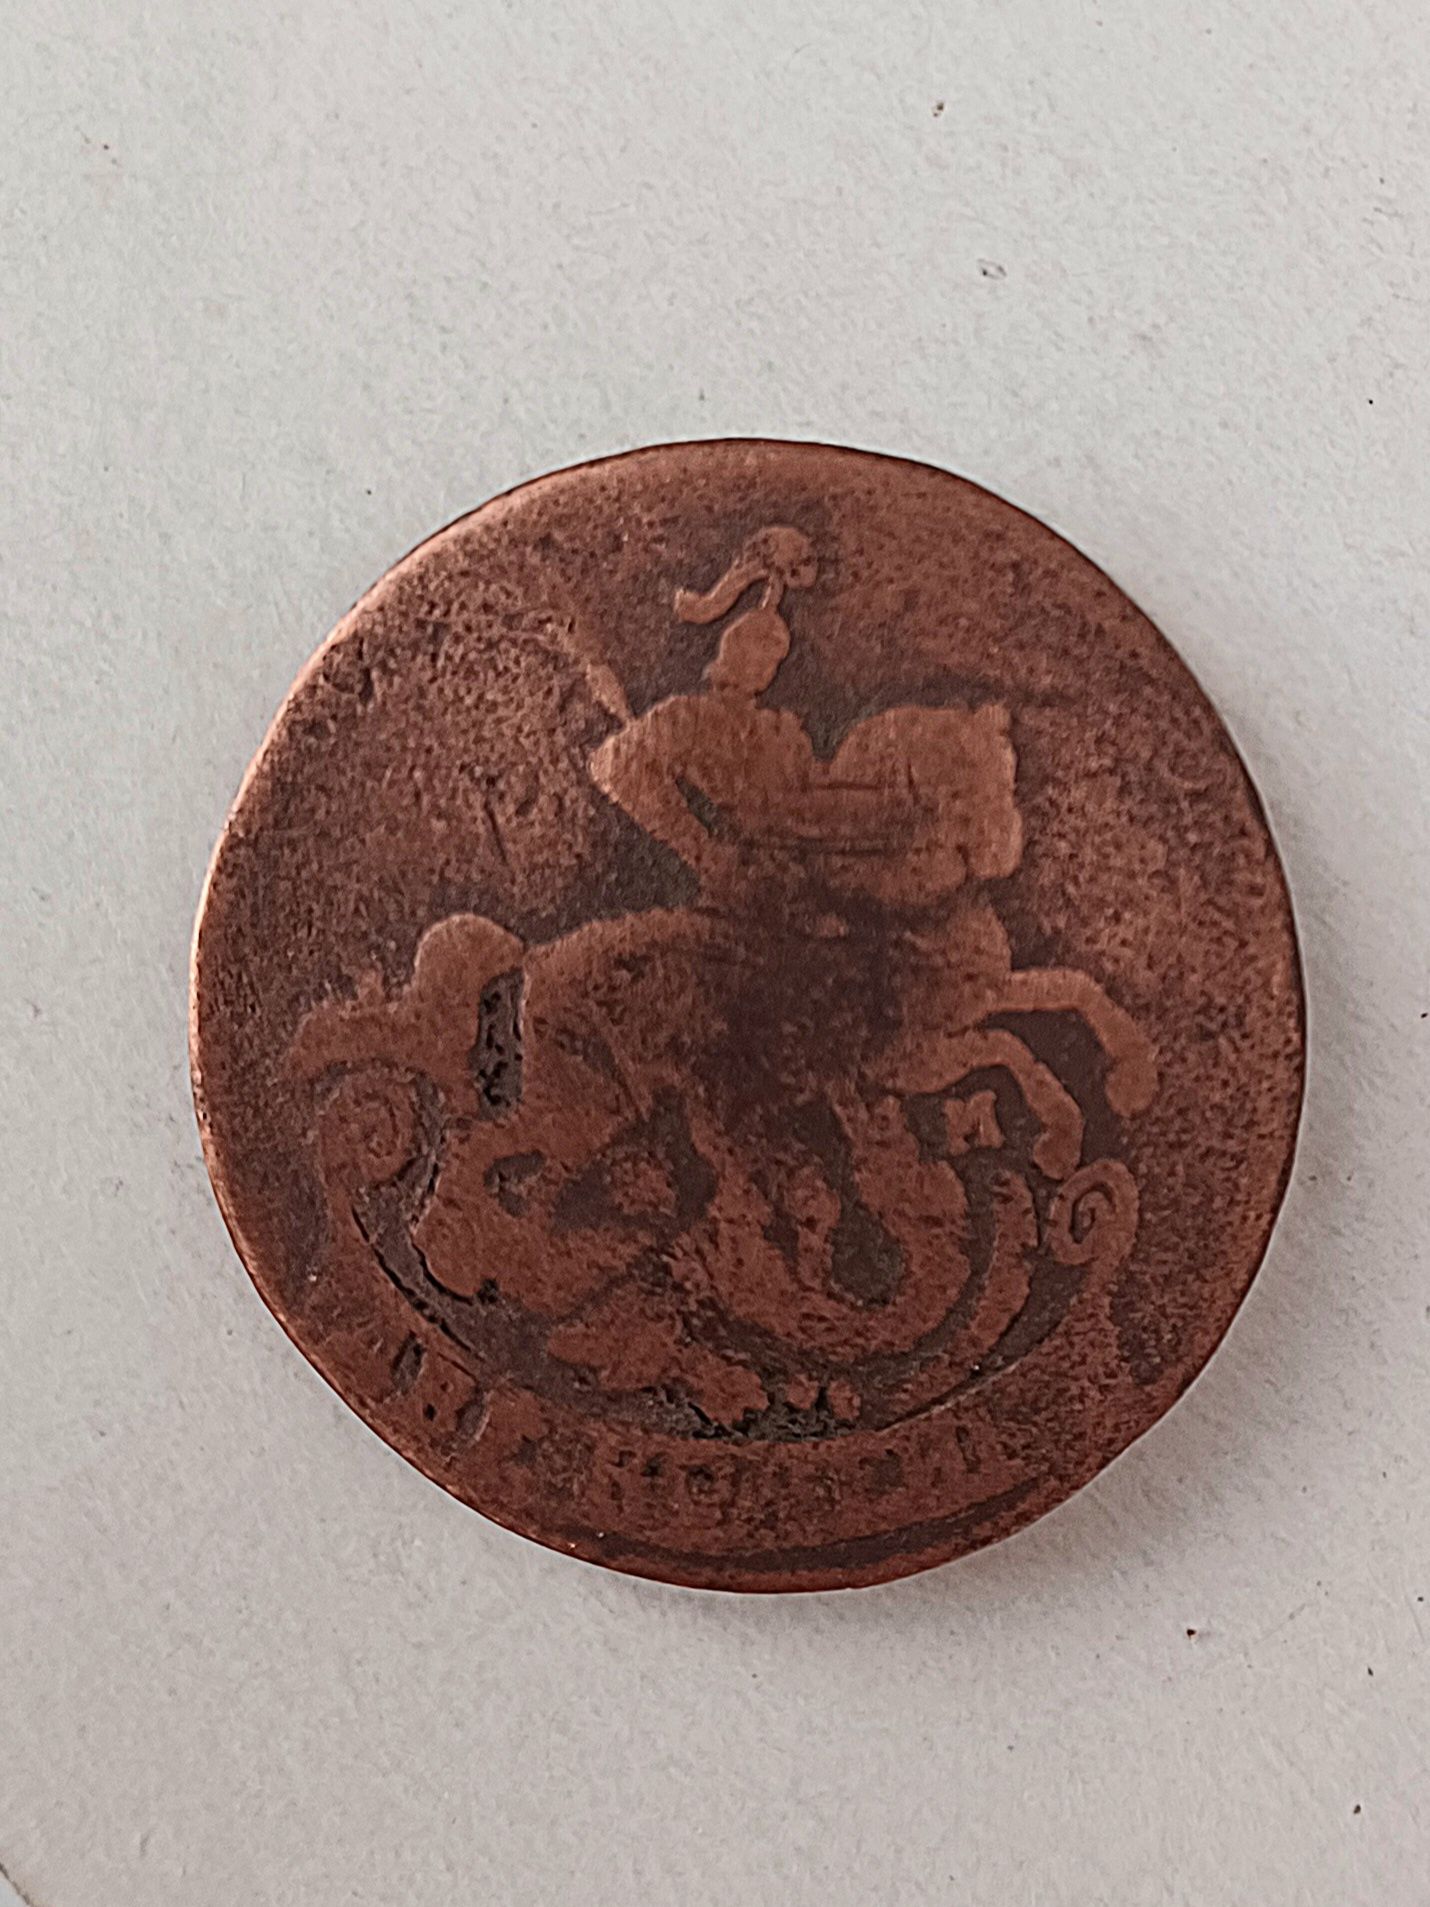 Pt colectionari Monedă din 1765 de pe timpul reginei Elisabeta ll